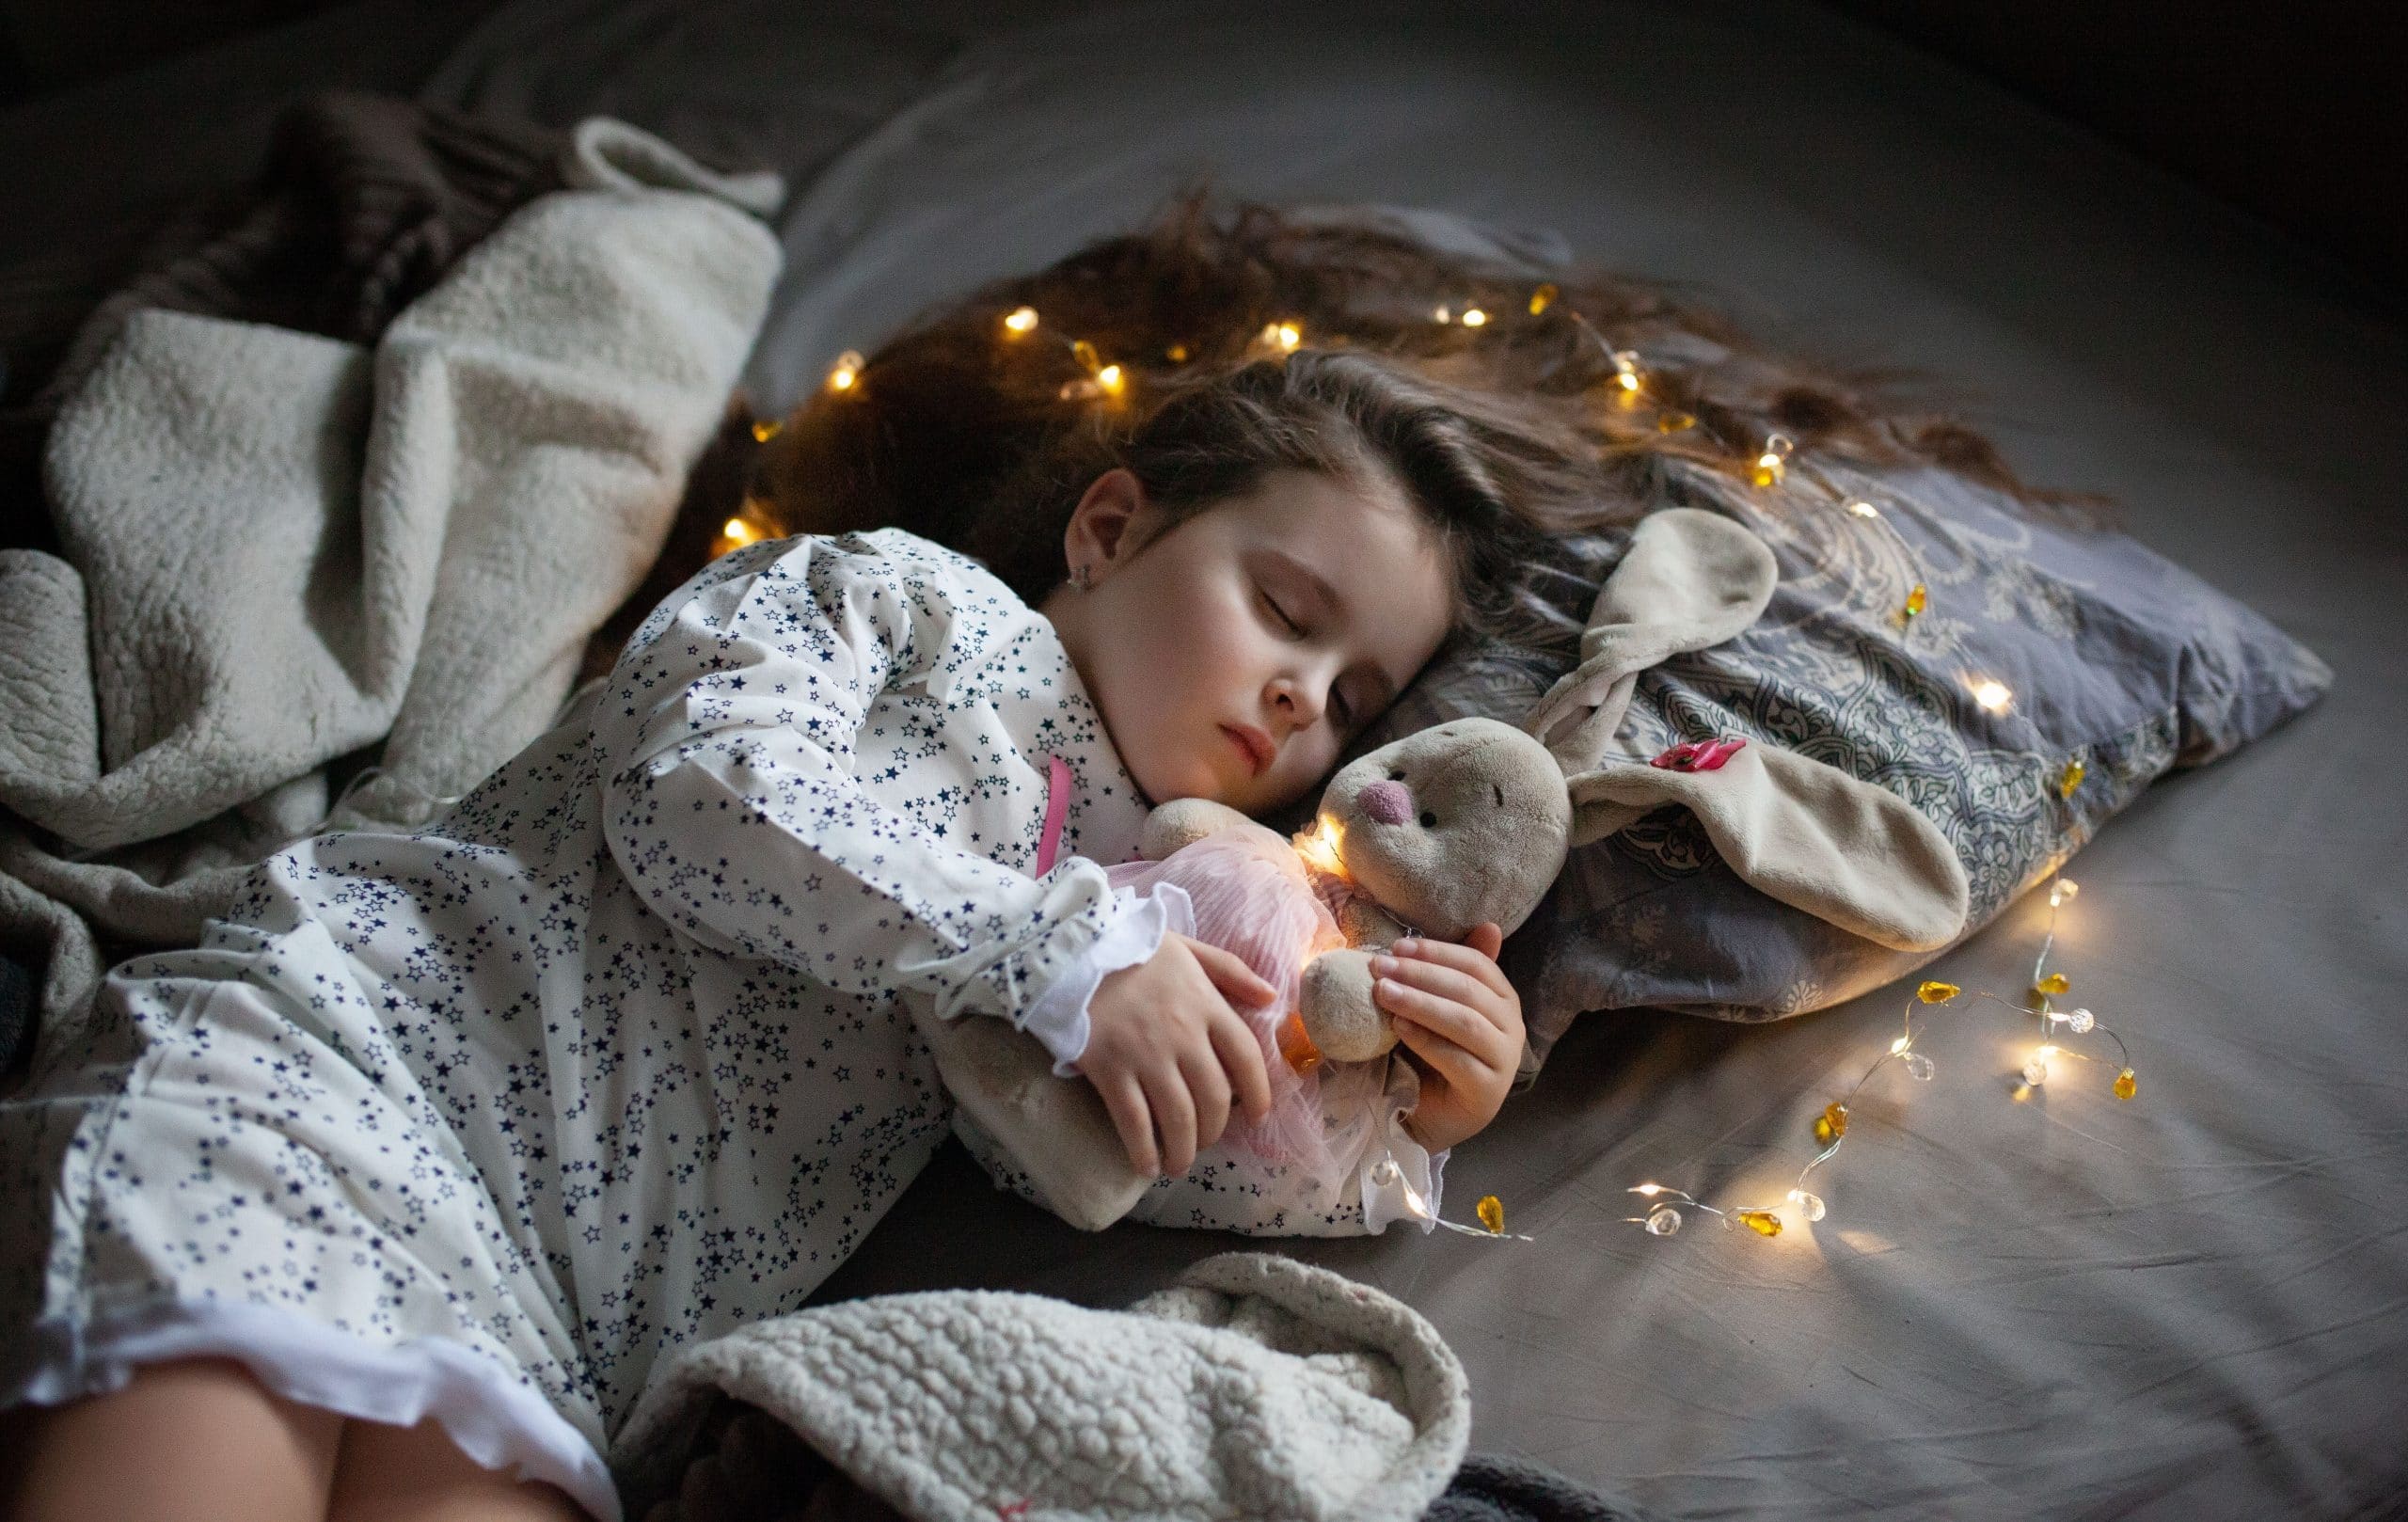 Comment identifier les troubles du sommeil chez l’enfant ?